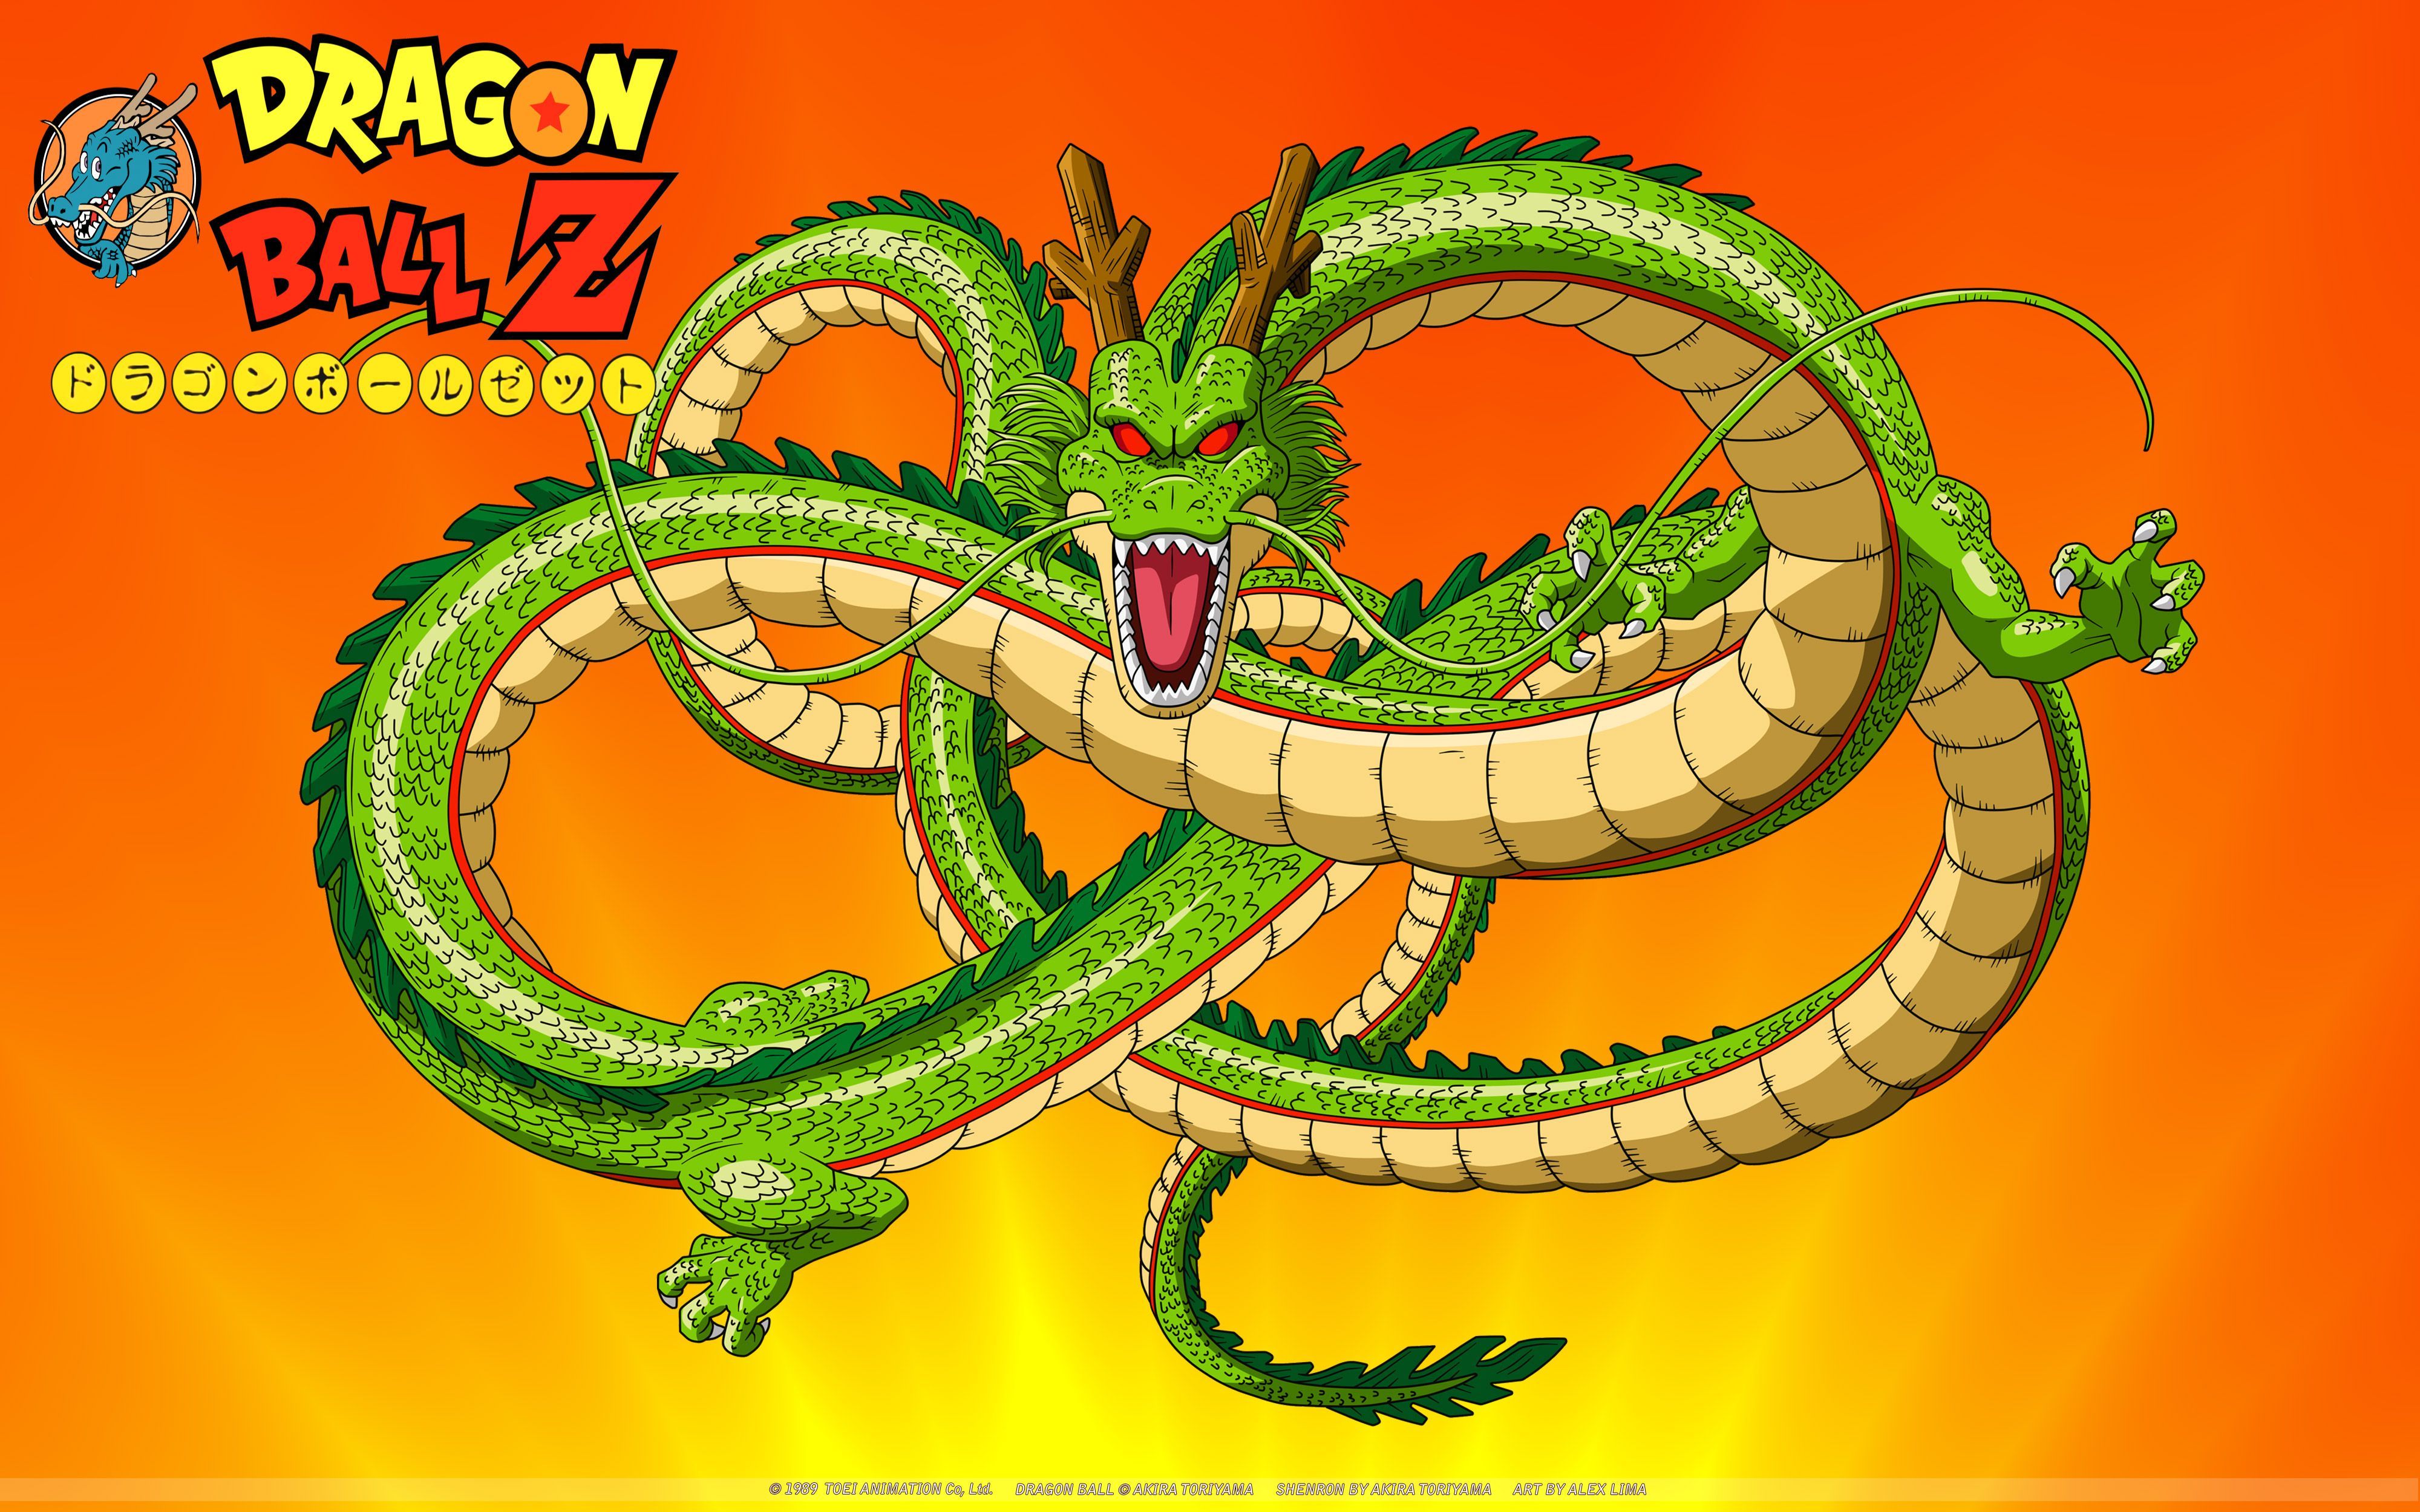 Free Dragon Ball Z Shenron, computer desktop wallpaper, picture, image. Dragon ball z, Dragon ball, Shenron